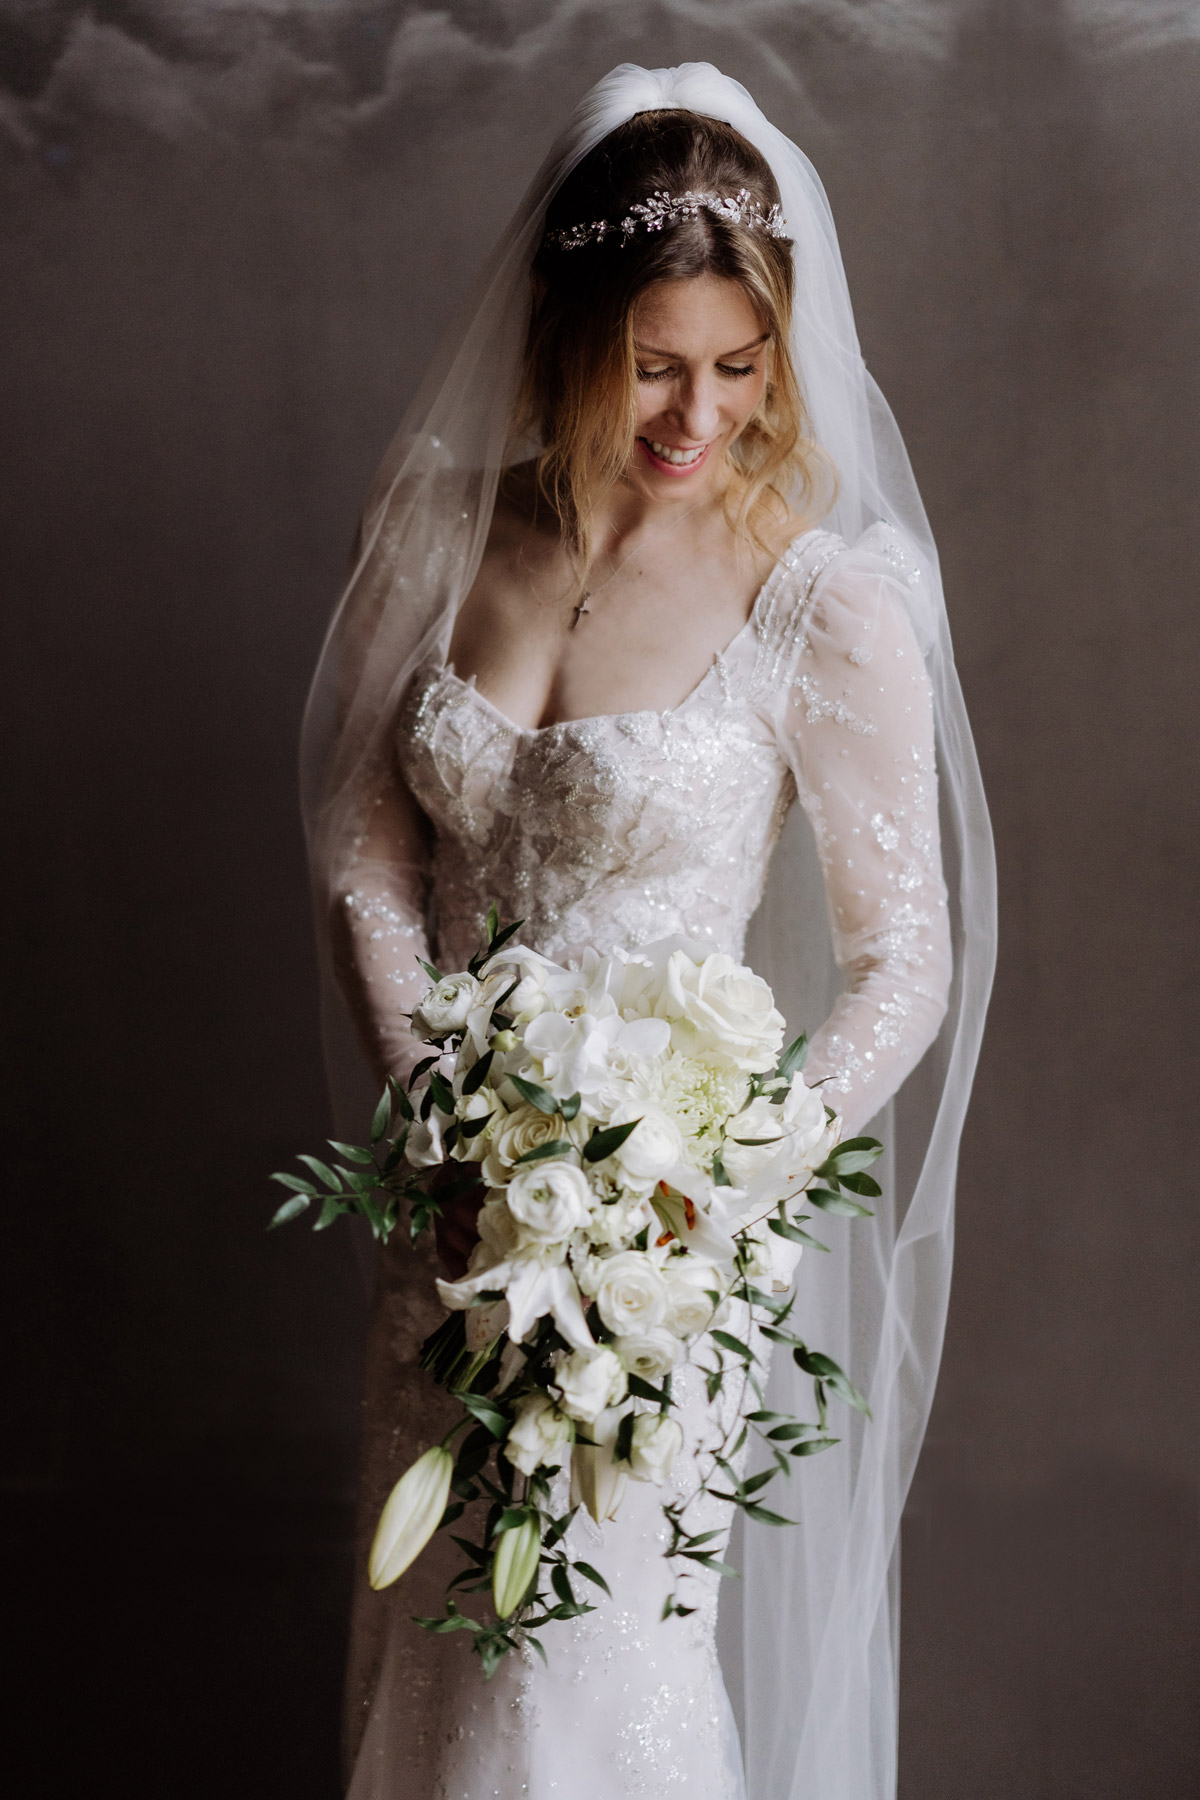 lachende Braut mit Schleier hält Brautstrauß in Tropfenform in Weiß und Grün mit Rosen, Ranunkeln und Lilien © www.hochzeitslicht.de #hochzeitslicht